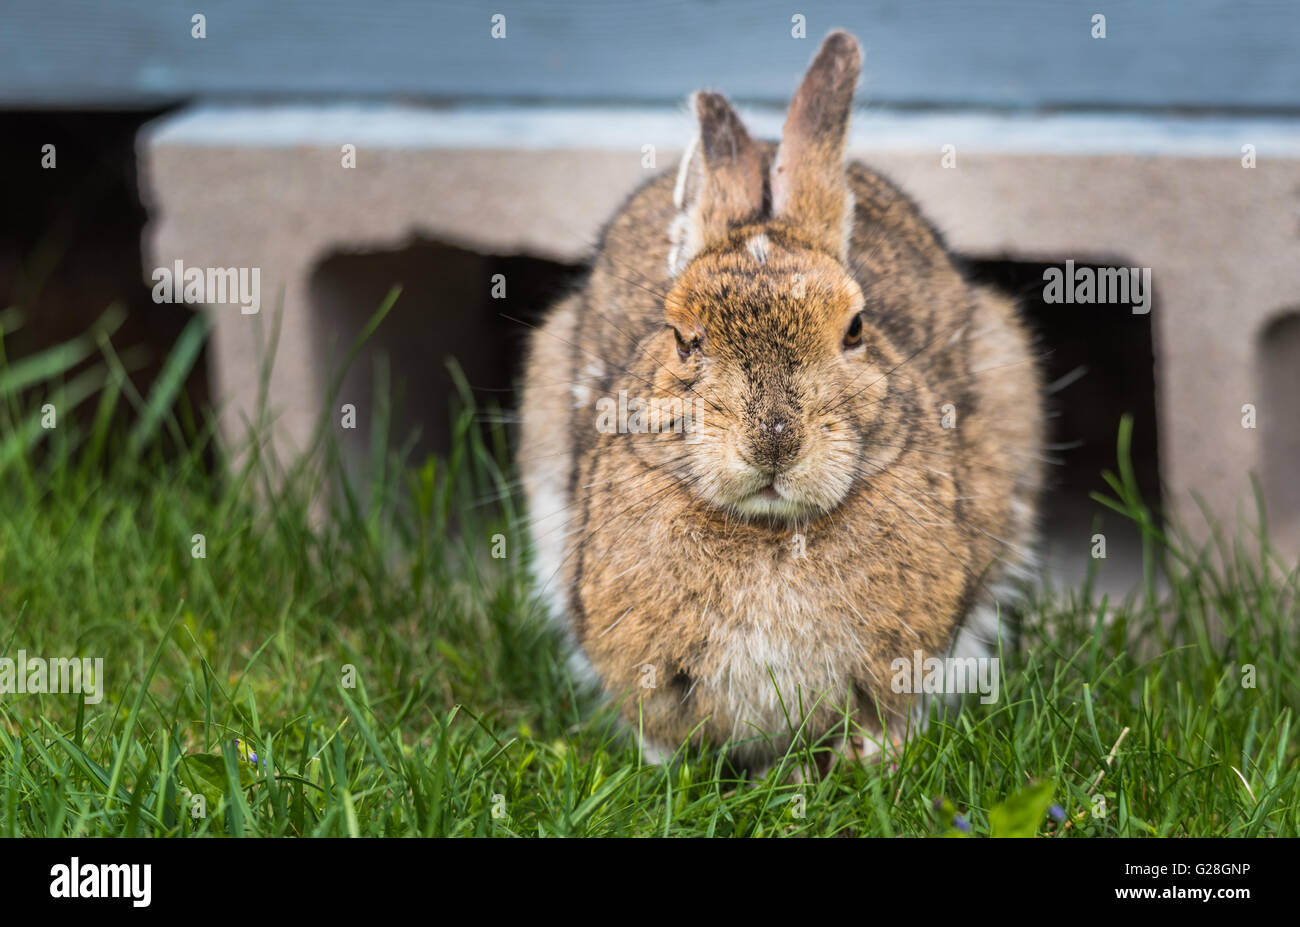 Kluge alte senior Hase Snowshoe Hare Blick in die Kamera. Ich versuche zum Einschlafen - was meinst du wollen? Stockfoto